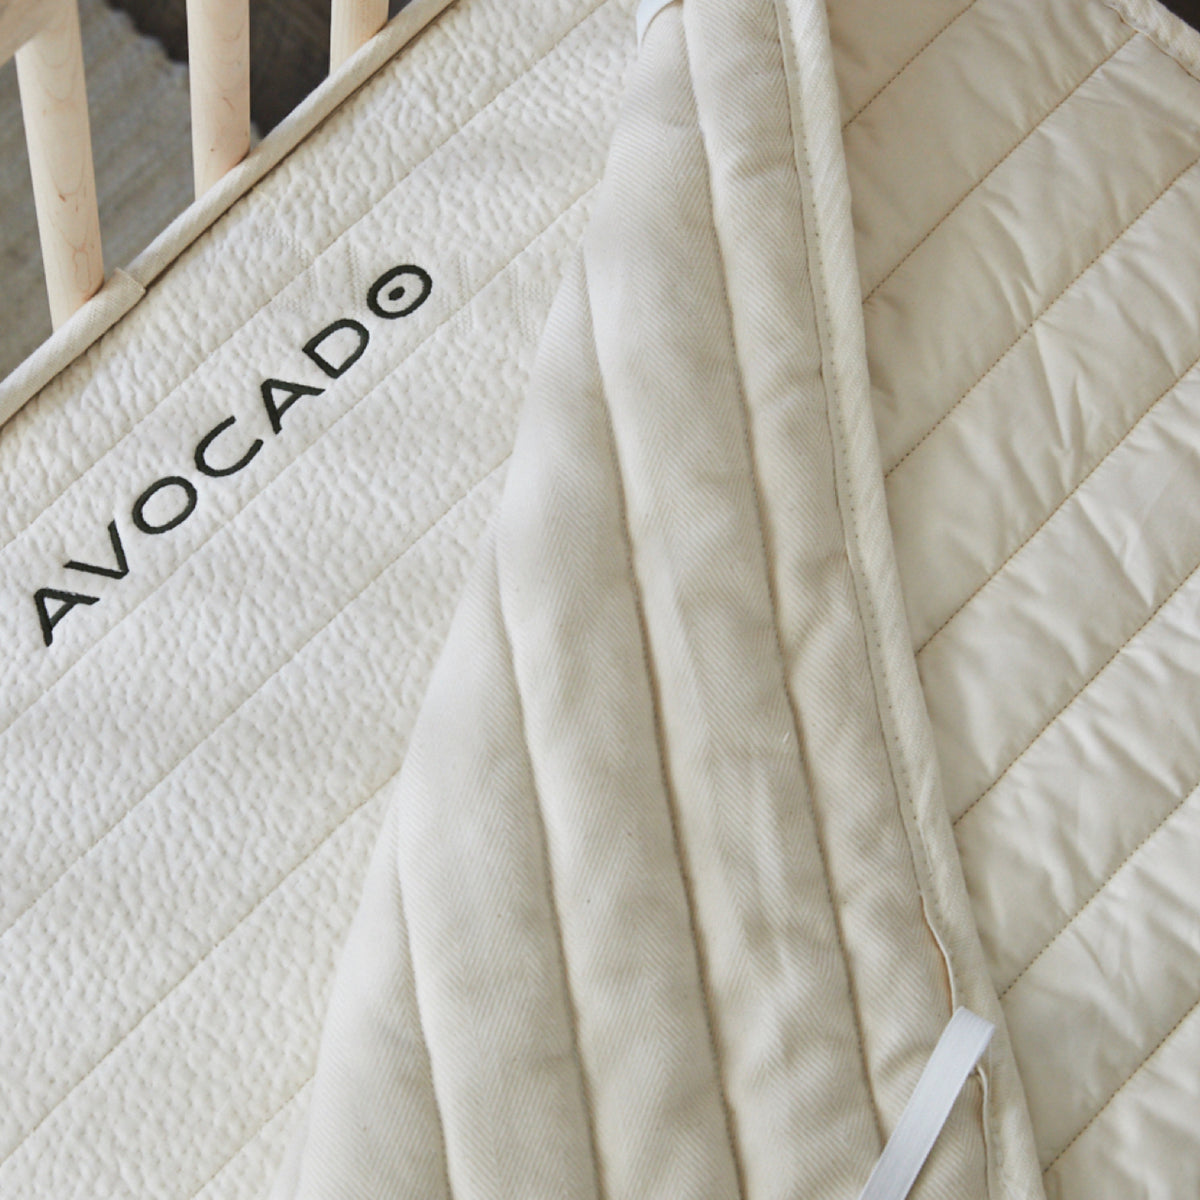 Avocado Green Mattress Organic Crib Pad Protector Made Safe nontoxic natural